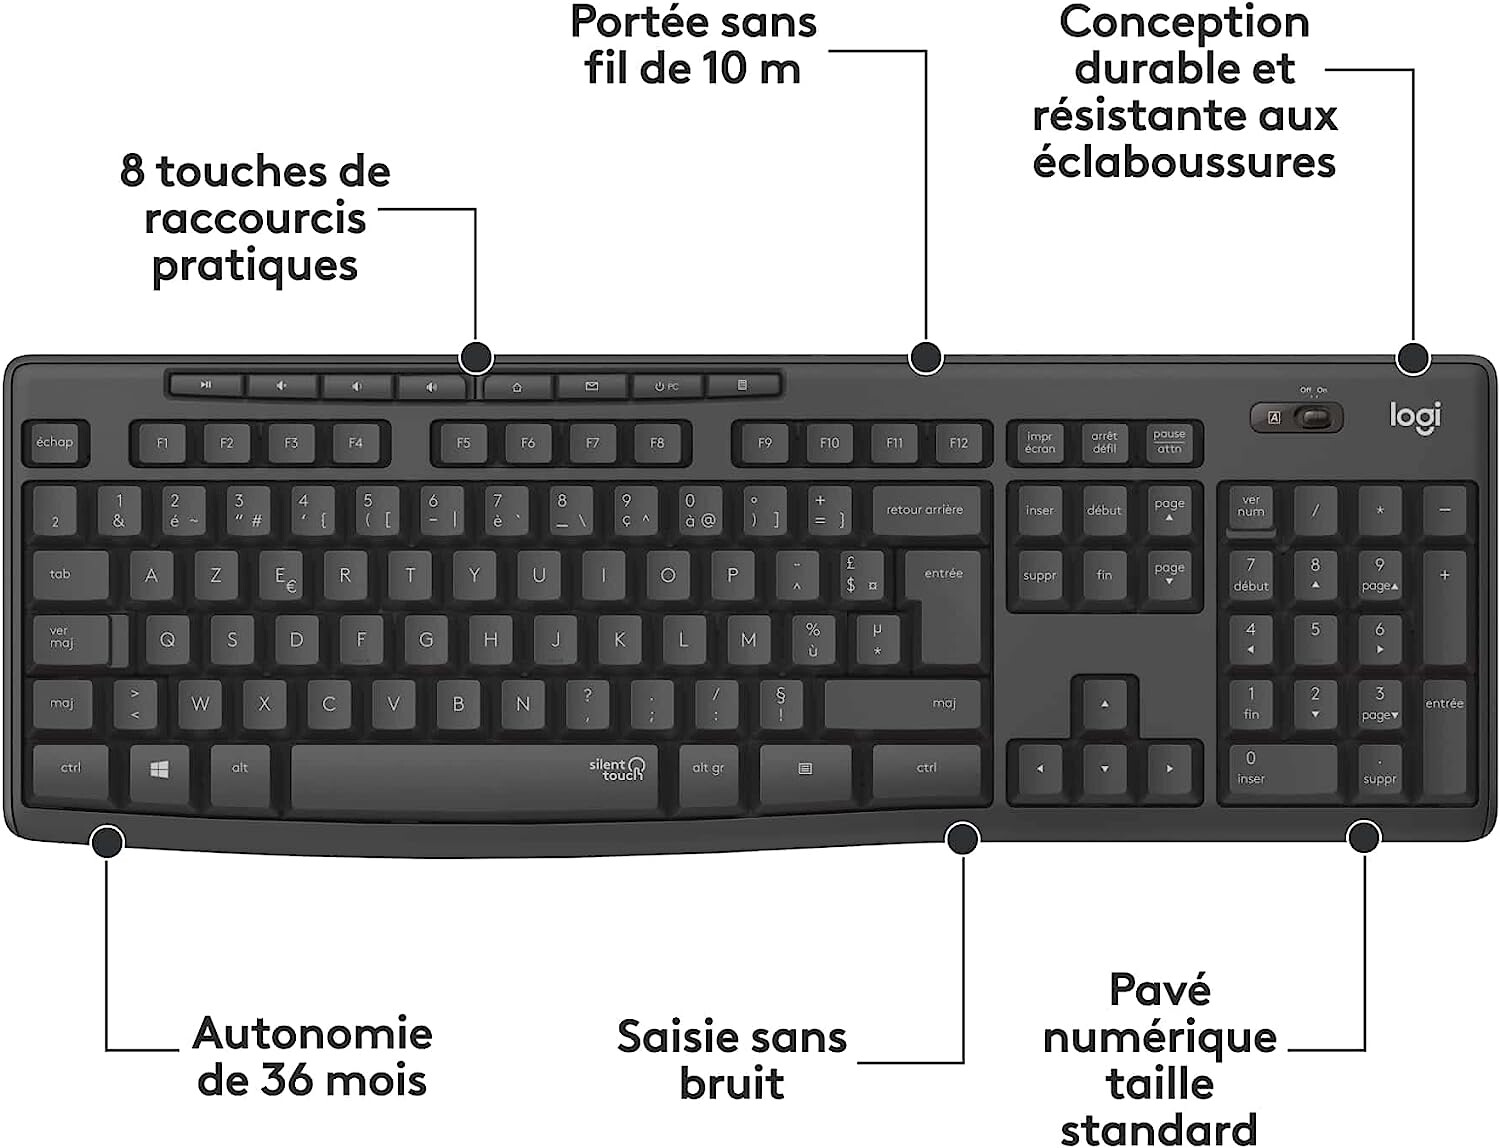 Pack avec clavier et souris sans fil MK295